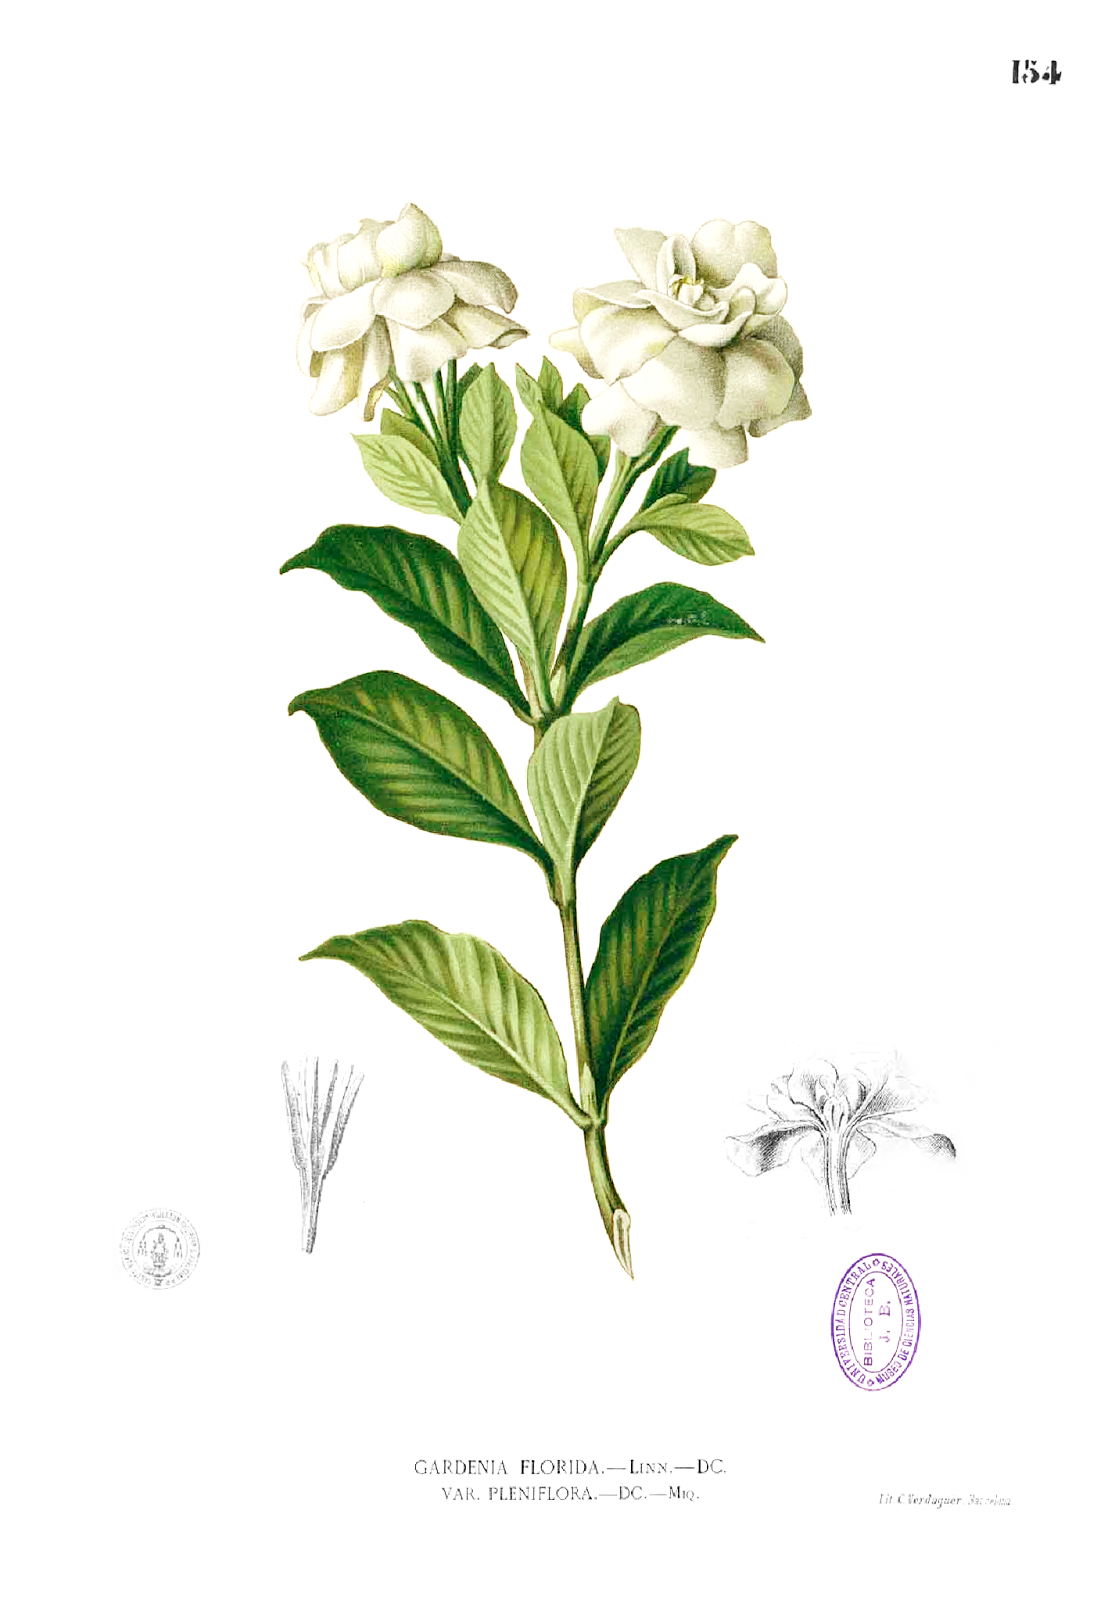 Las mil caras de la flor de la gardenia - EL BLOG DE LA TABLA